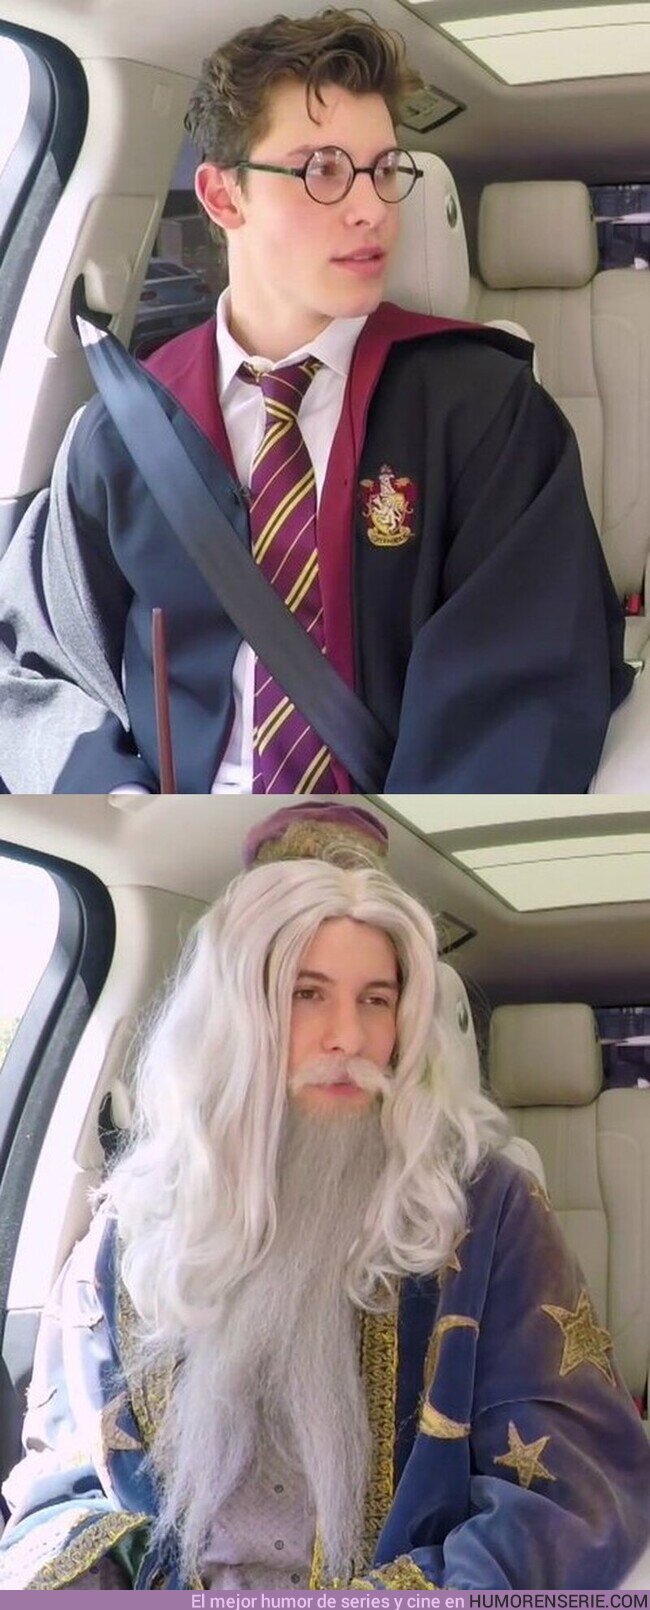 52603 - Shawn Mendes disfrazado de Harry Potter y Albus Dumbledore es lo mejor que verás en mucho tiempo